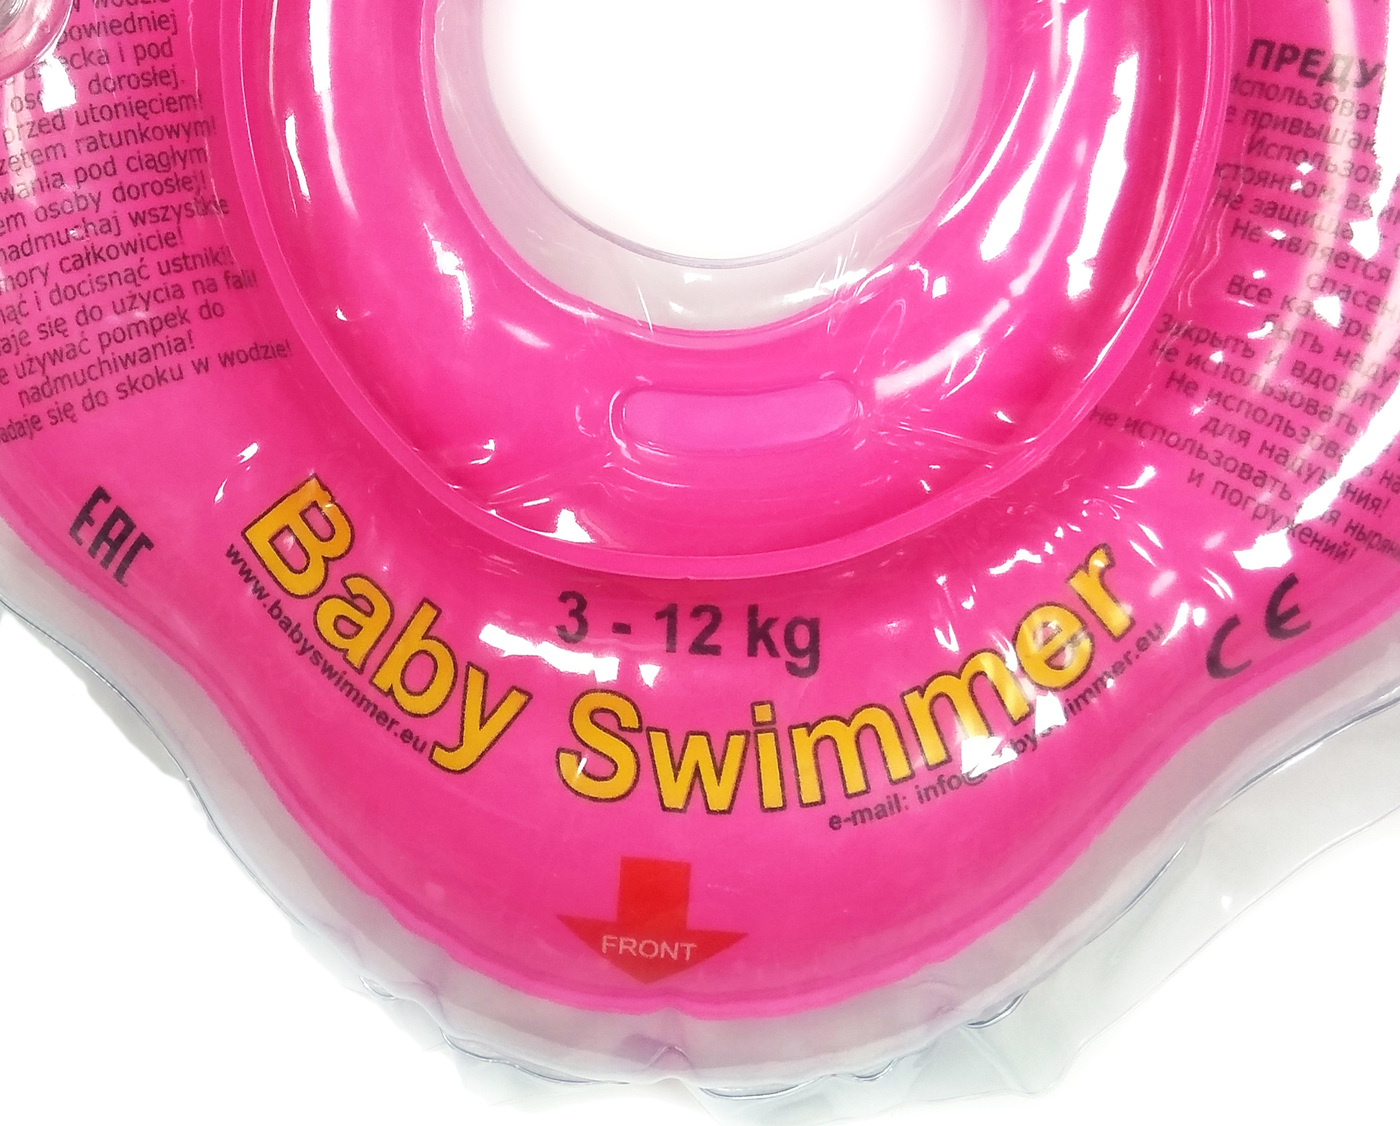 Для купания 0. Беби свимер круг. Круг Baby swimmer для купания новорожденных. BABYSWIMMER круг джинса bs01d. Сертификат на круги Baby swimmer.